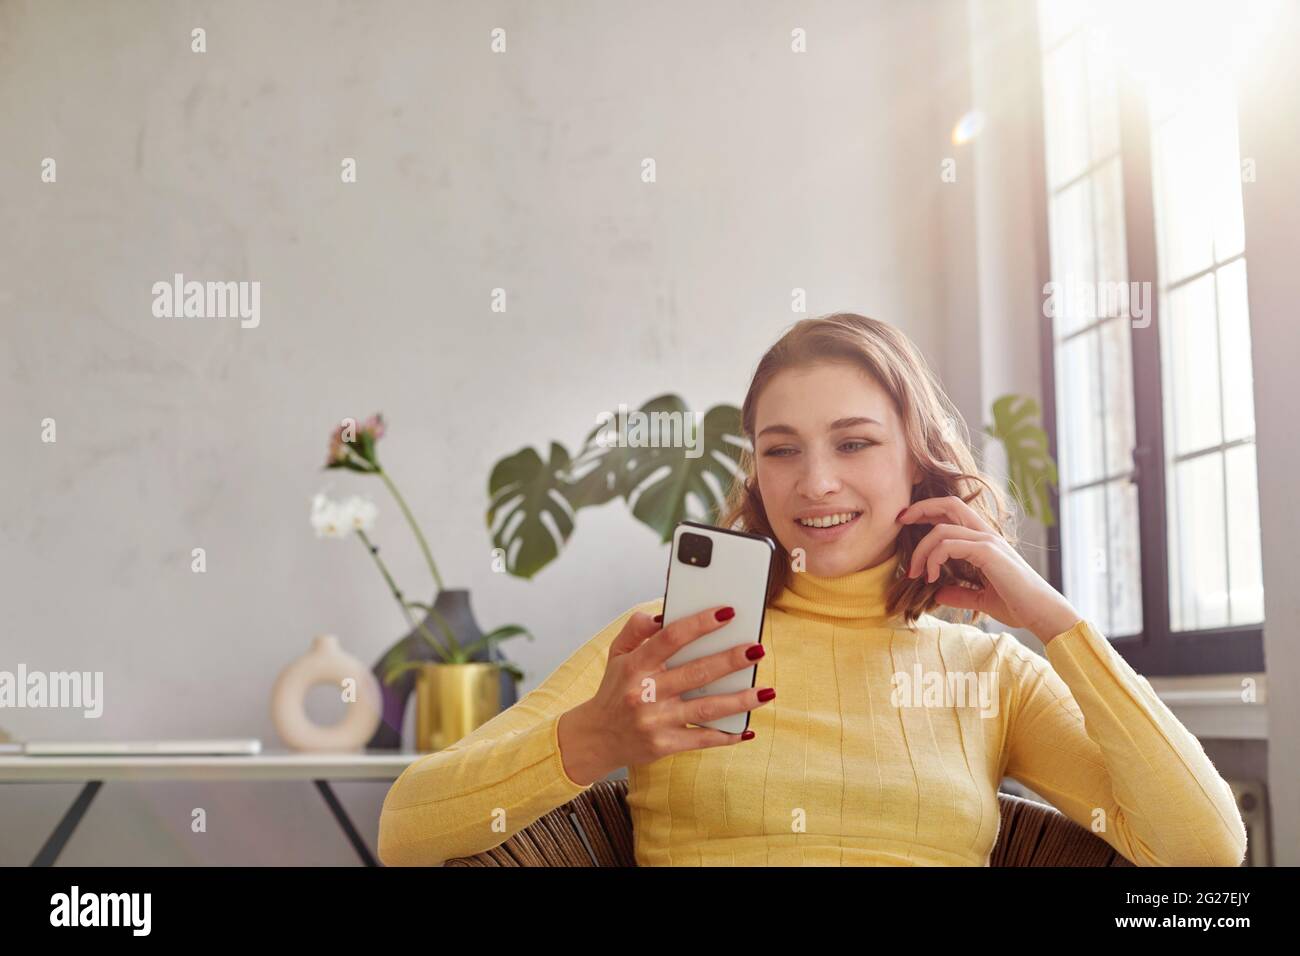 Glückliche Frau in gelbem Rollkragen winkende Geste, während sie auf einem Stuhl sitzt und auf einem Mobiltelefon in einem hellen Arbeitsbereich schaut Stockfoto